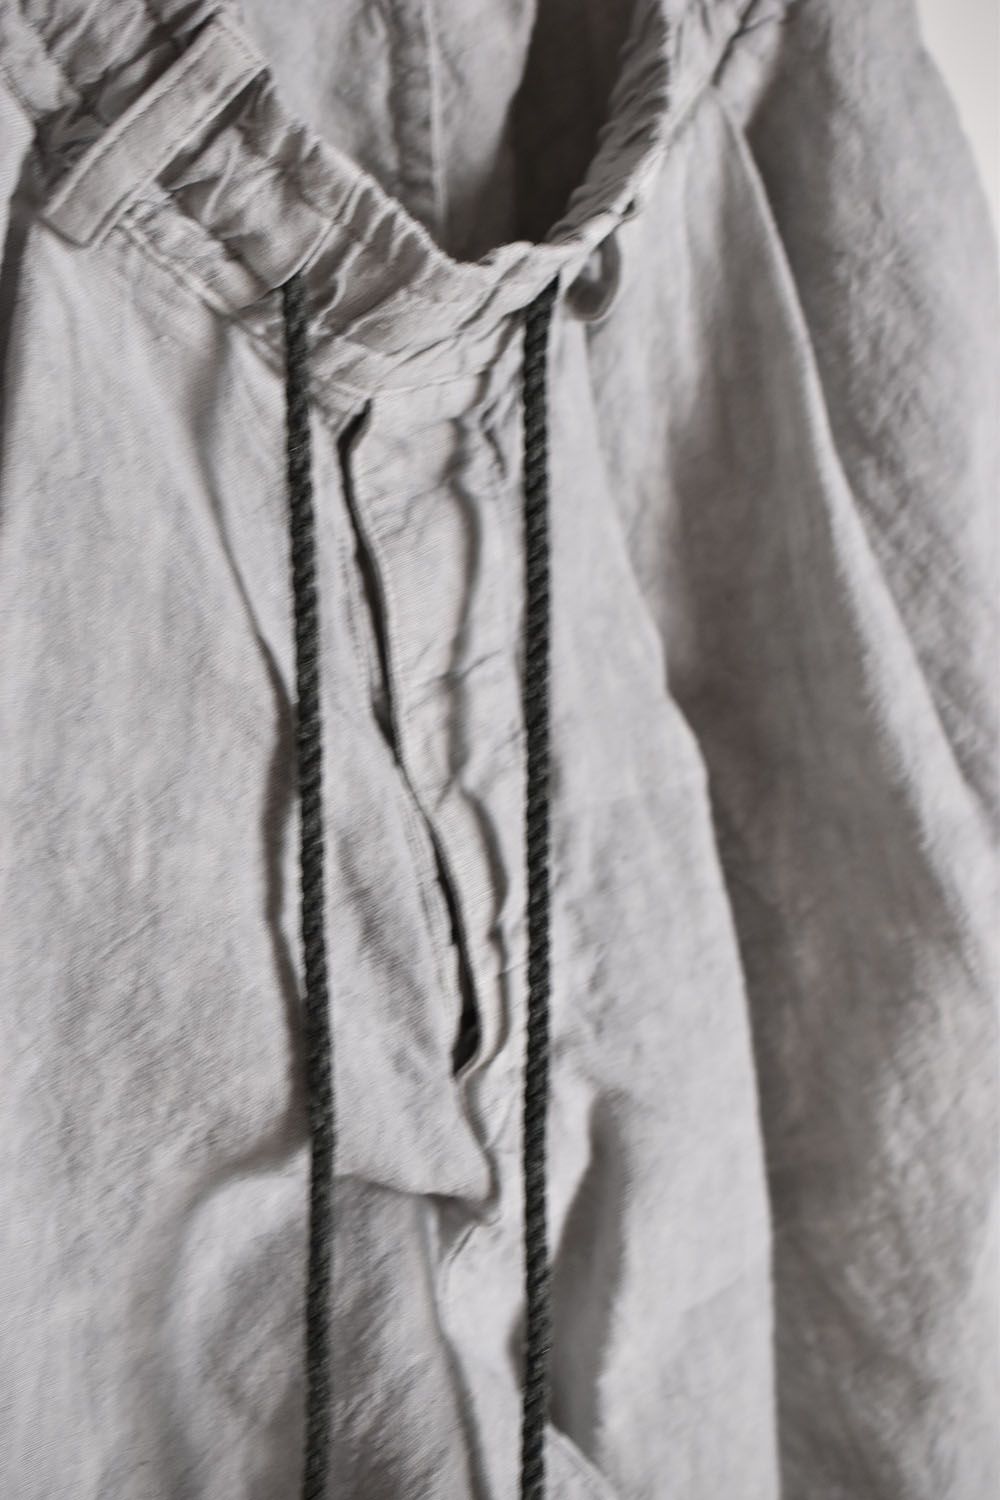 Sumi Dyed Tuck Shorts"L.Grey"墨染タックショーツ"ライトグレー"